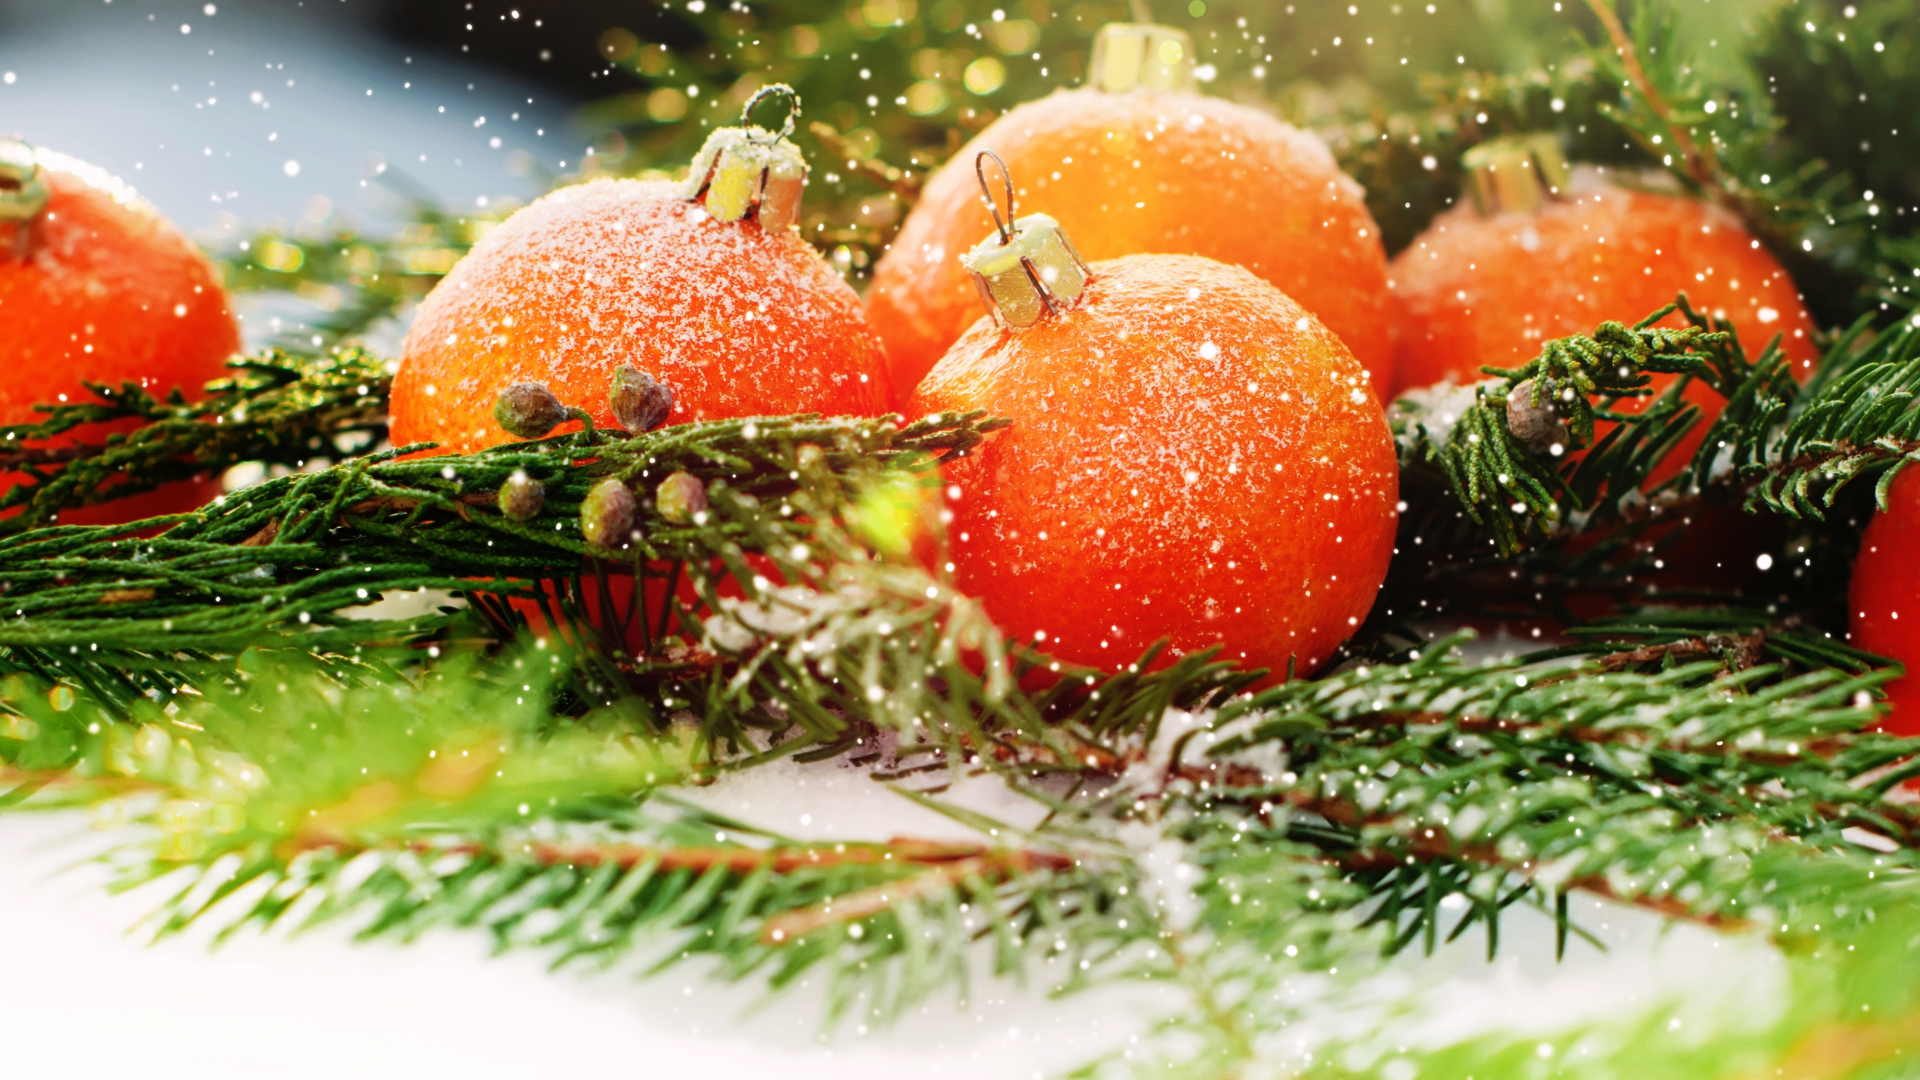 El Día De Navidad, Nochevieja, la Comida Vegetariana, Alimento, Vegetal. Wallpaper in 1920x1080 Resolution